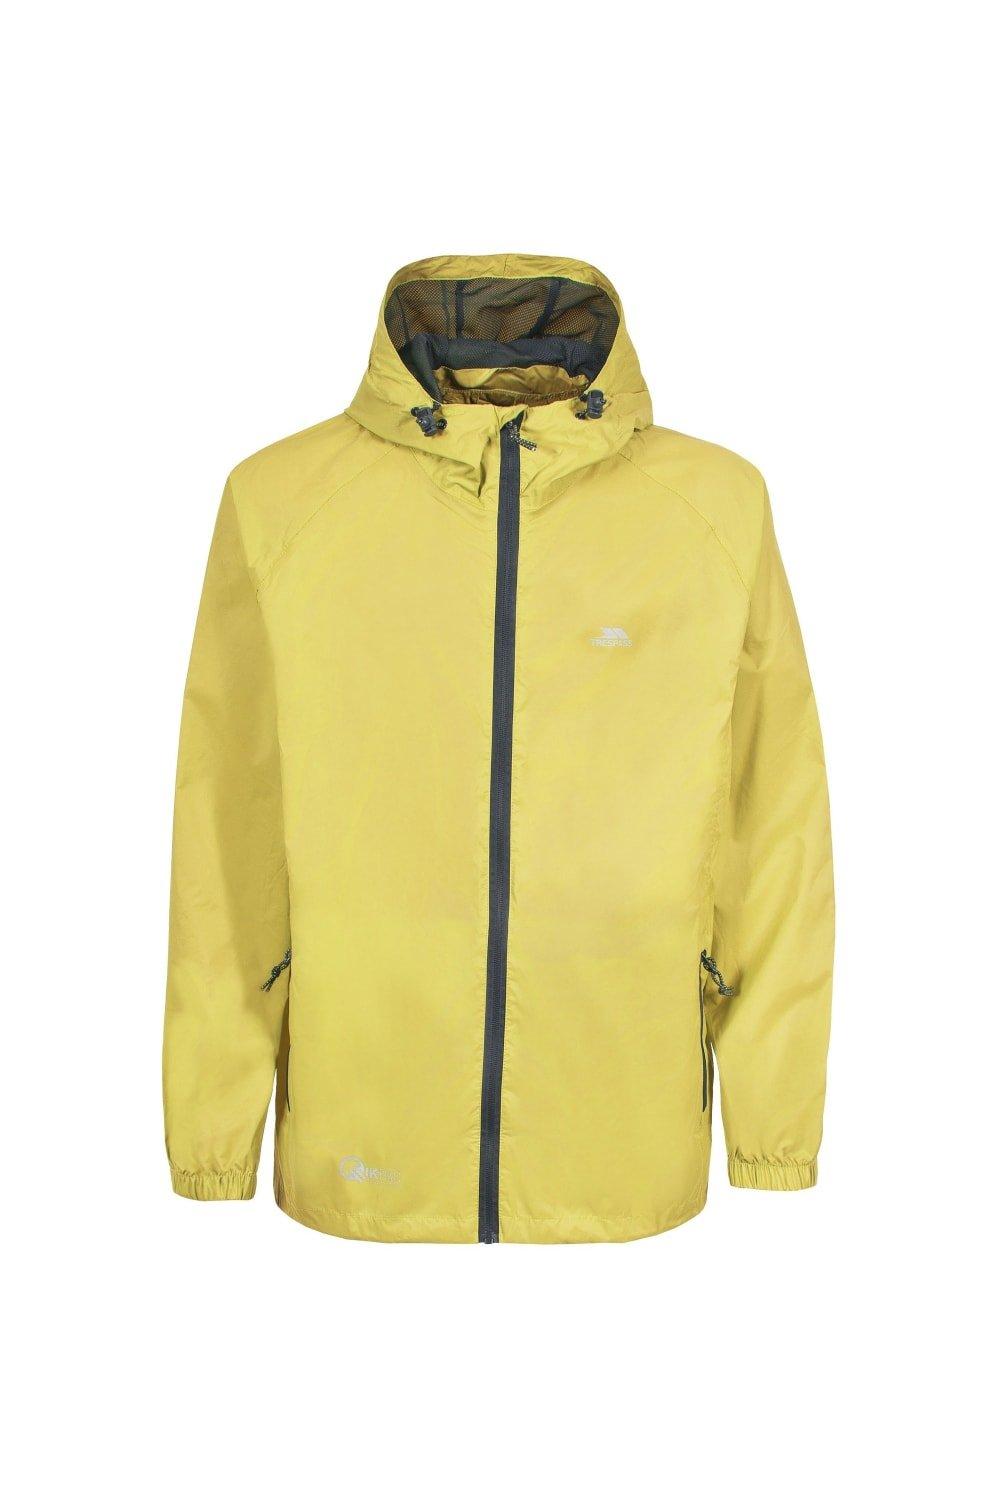 Водонепроницаемая куртка Qikpac Packaway Trespass, желтый куртка утепленная zara packaway черный